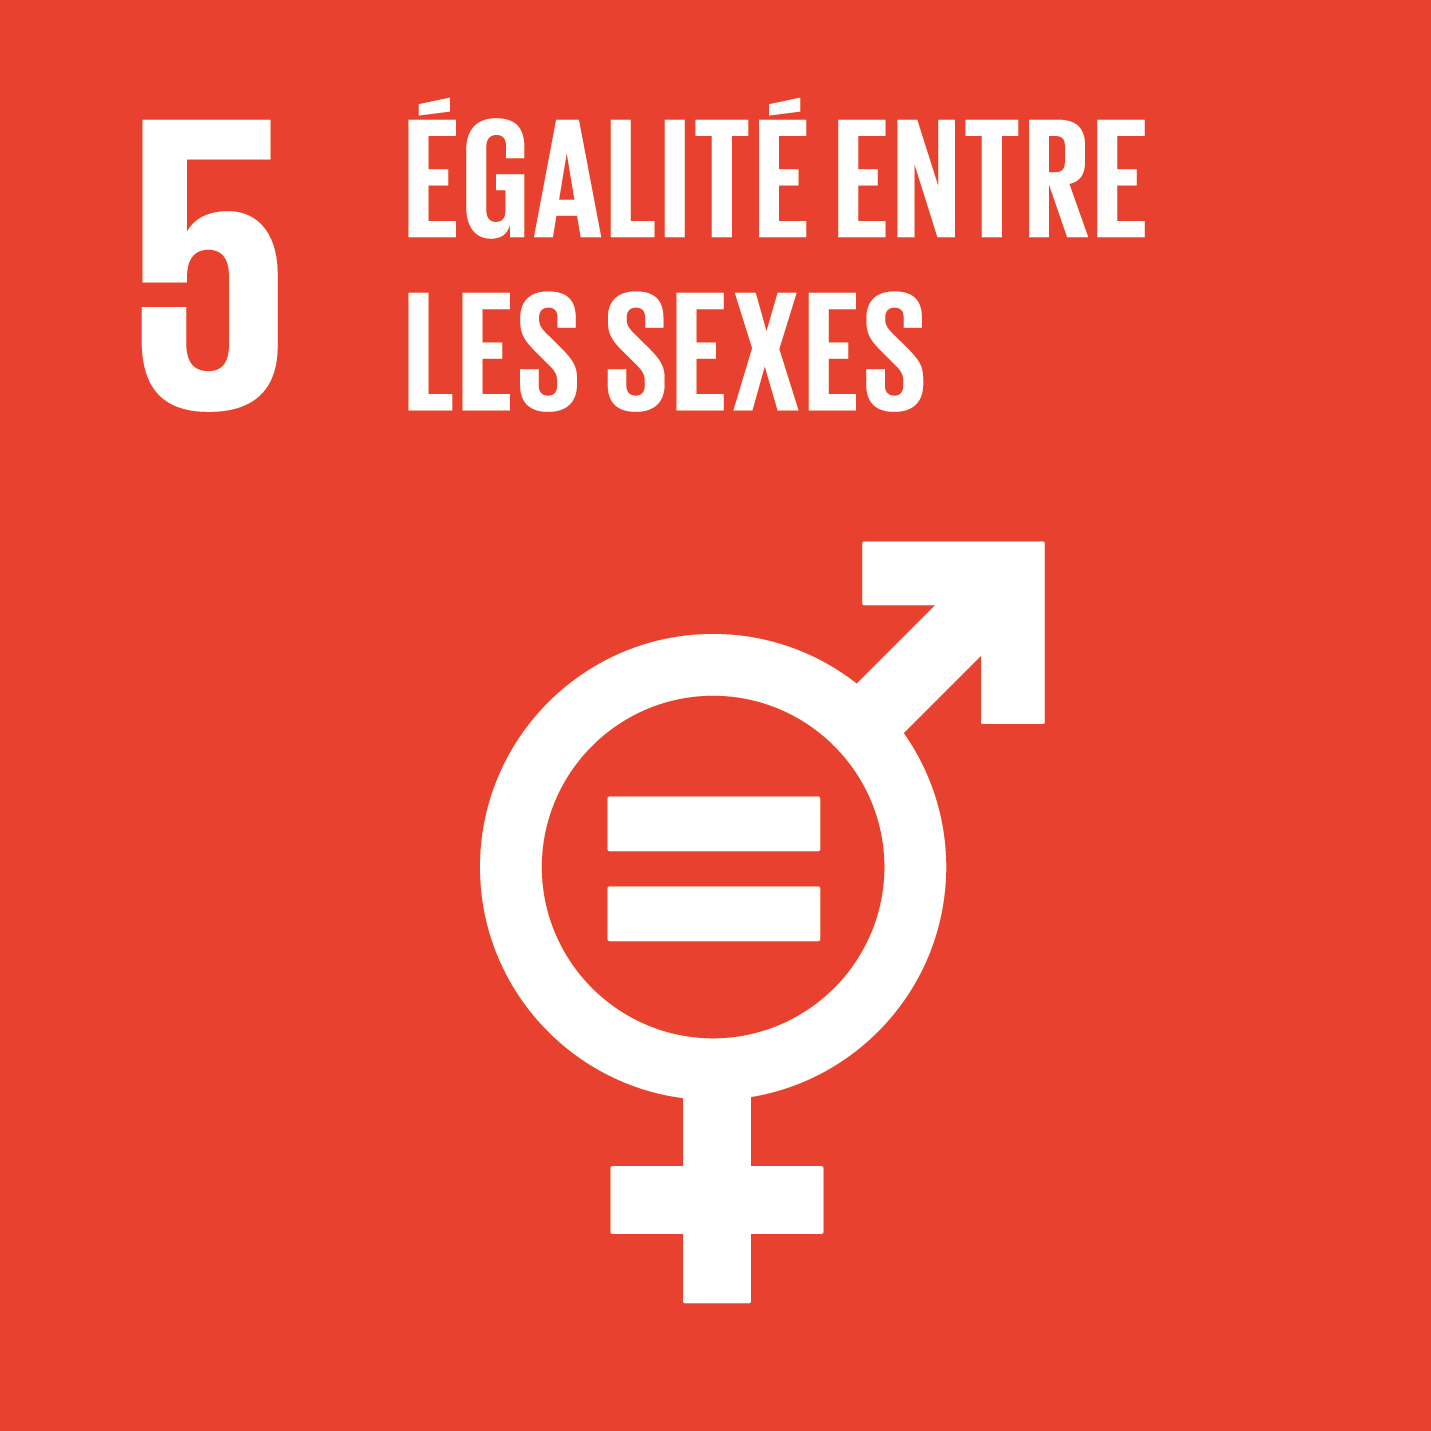 Visuel objectif de développement durable 5 égalité entre les sexes